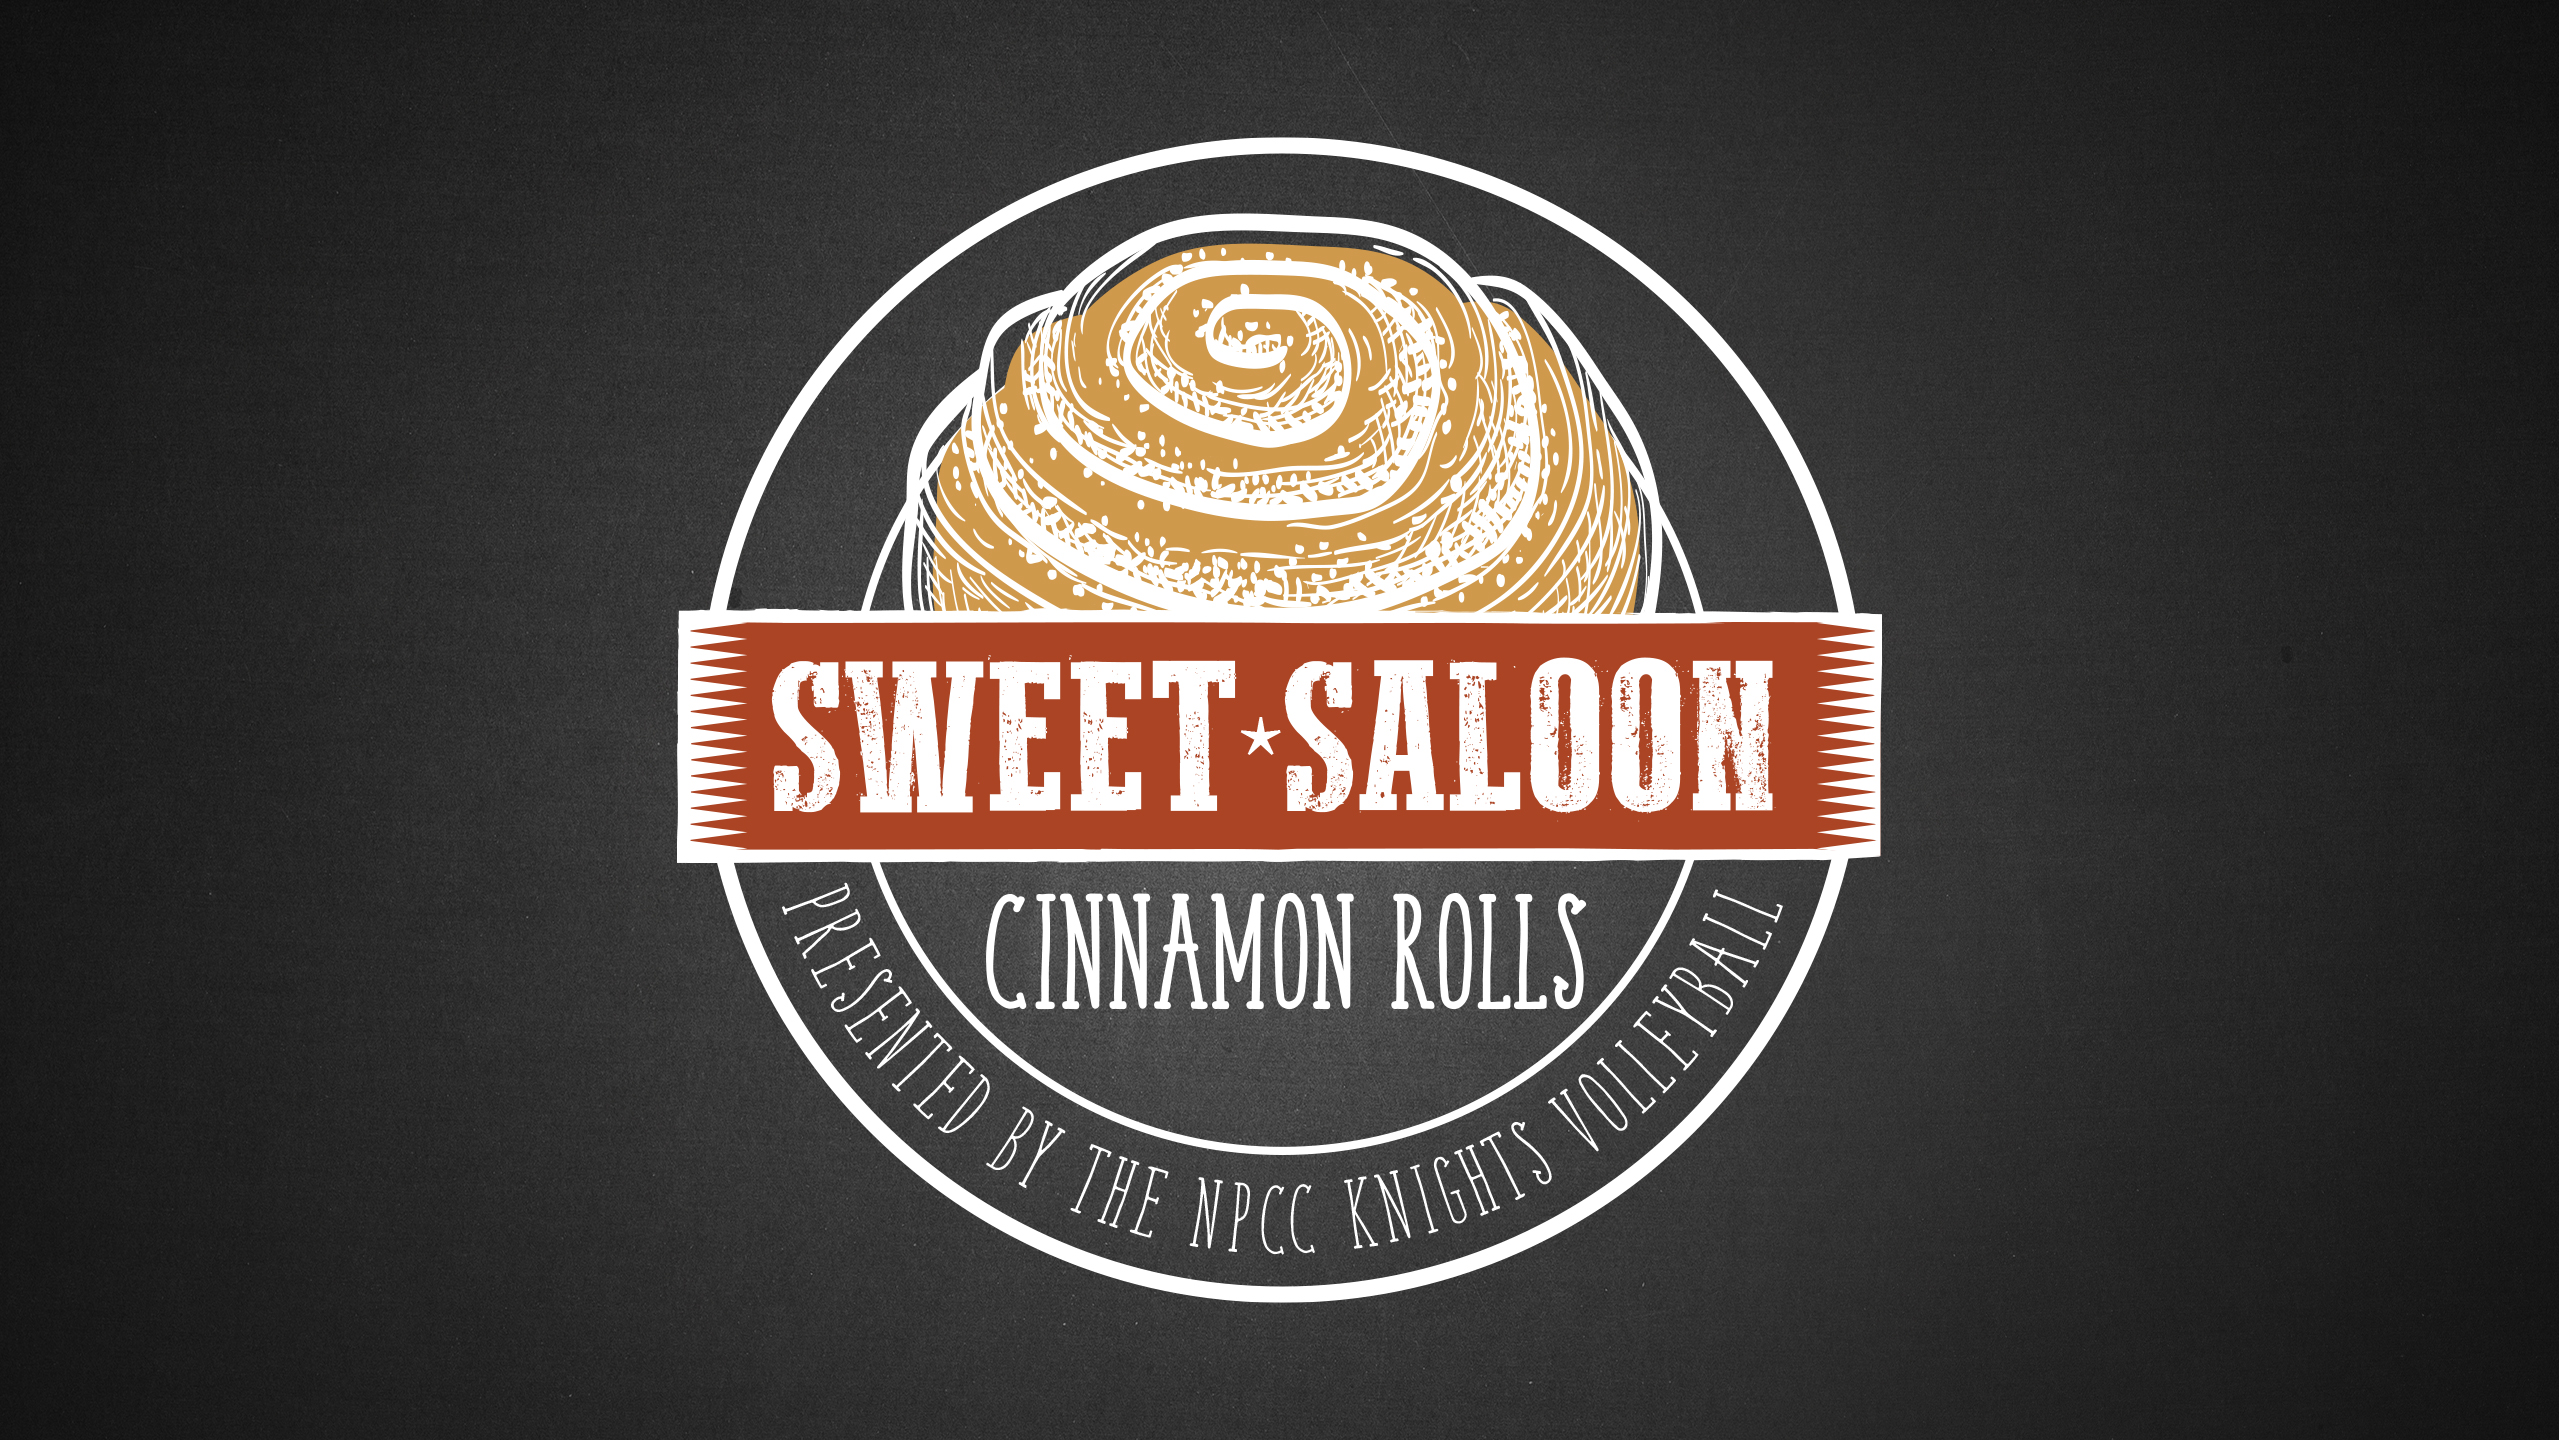 Sweet Saloon pre-orders begin June 5